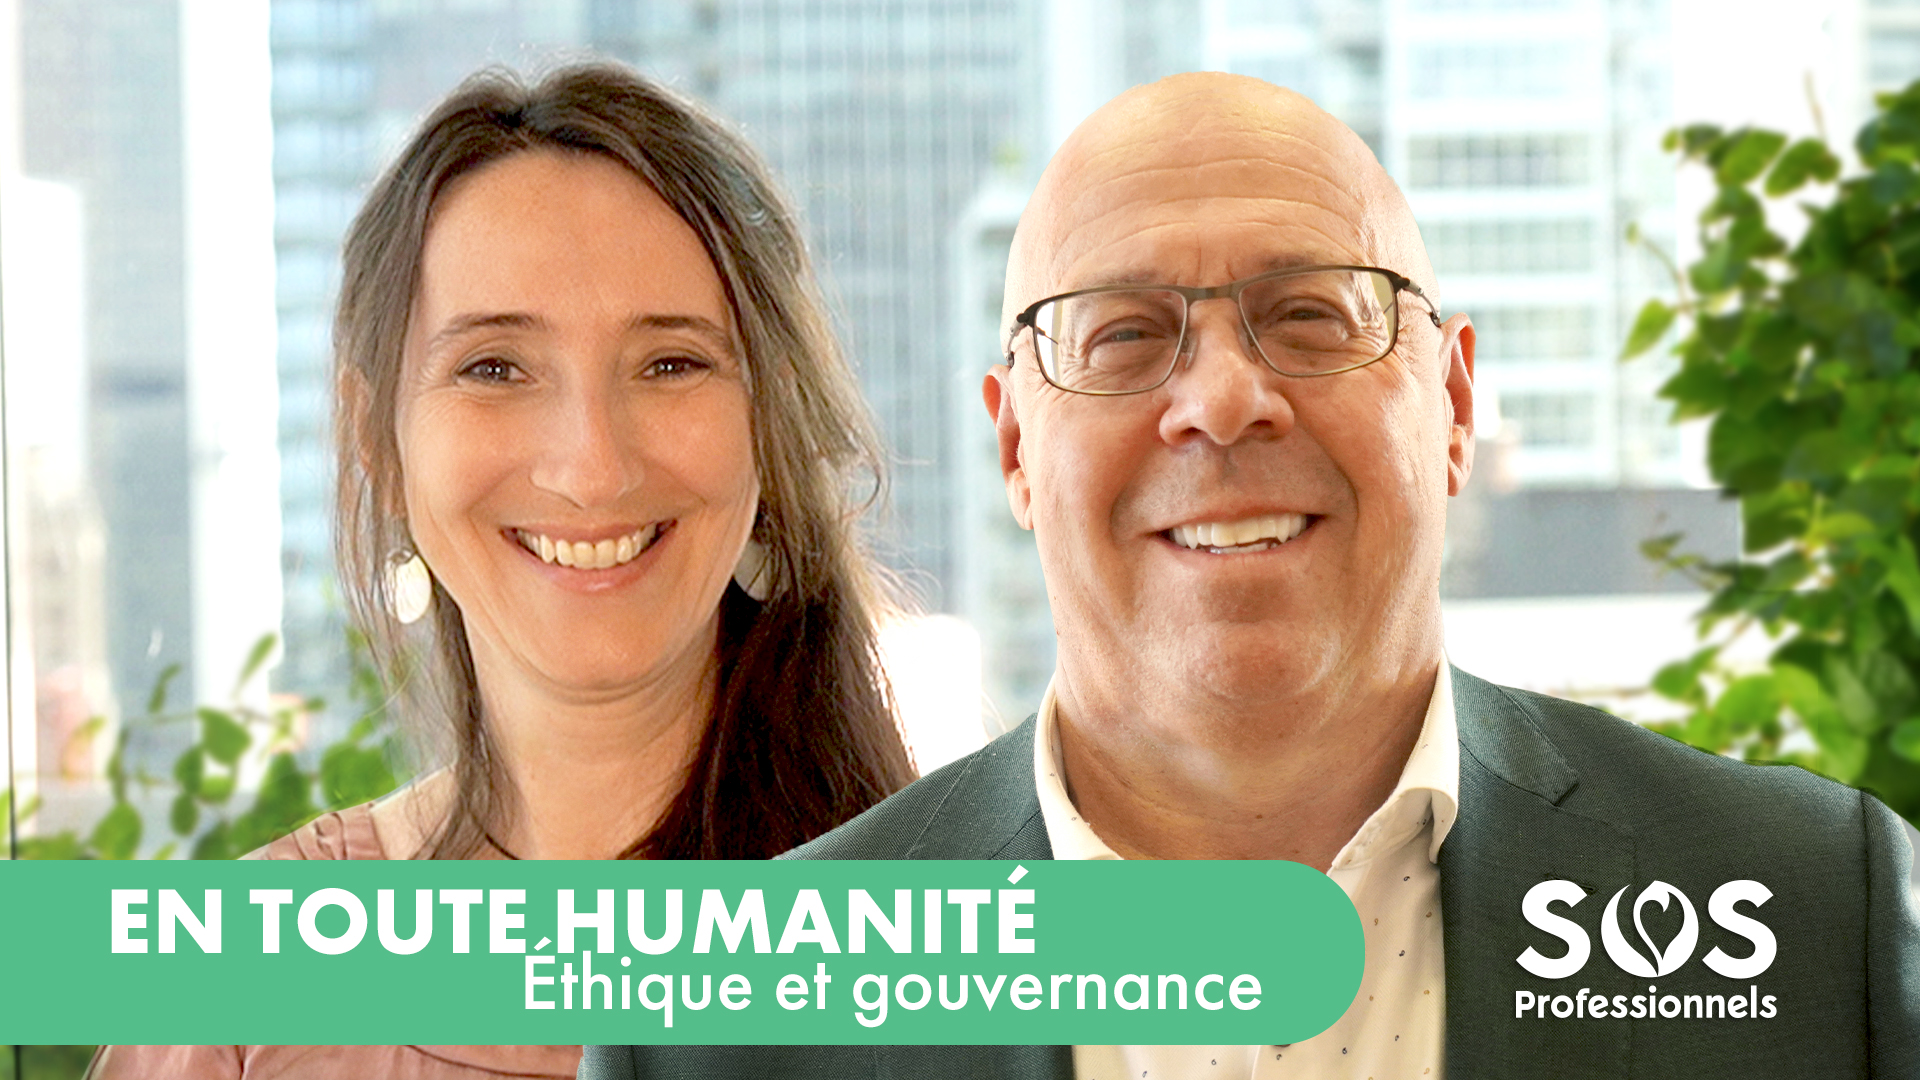 En toute humanité, Éthique et gouvernance. Podcast vidéo avec Marc Tassé, expert en éthique et gouvernance, par SOS Professionnels.